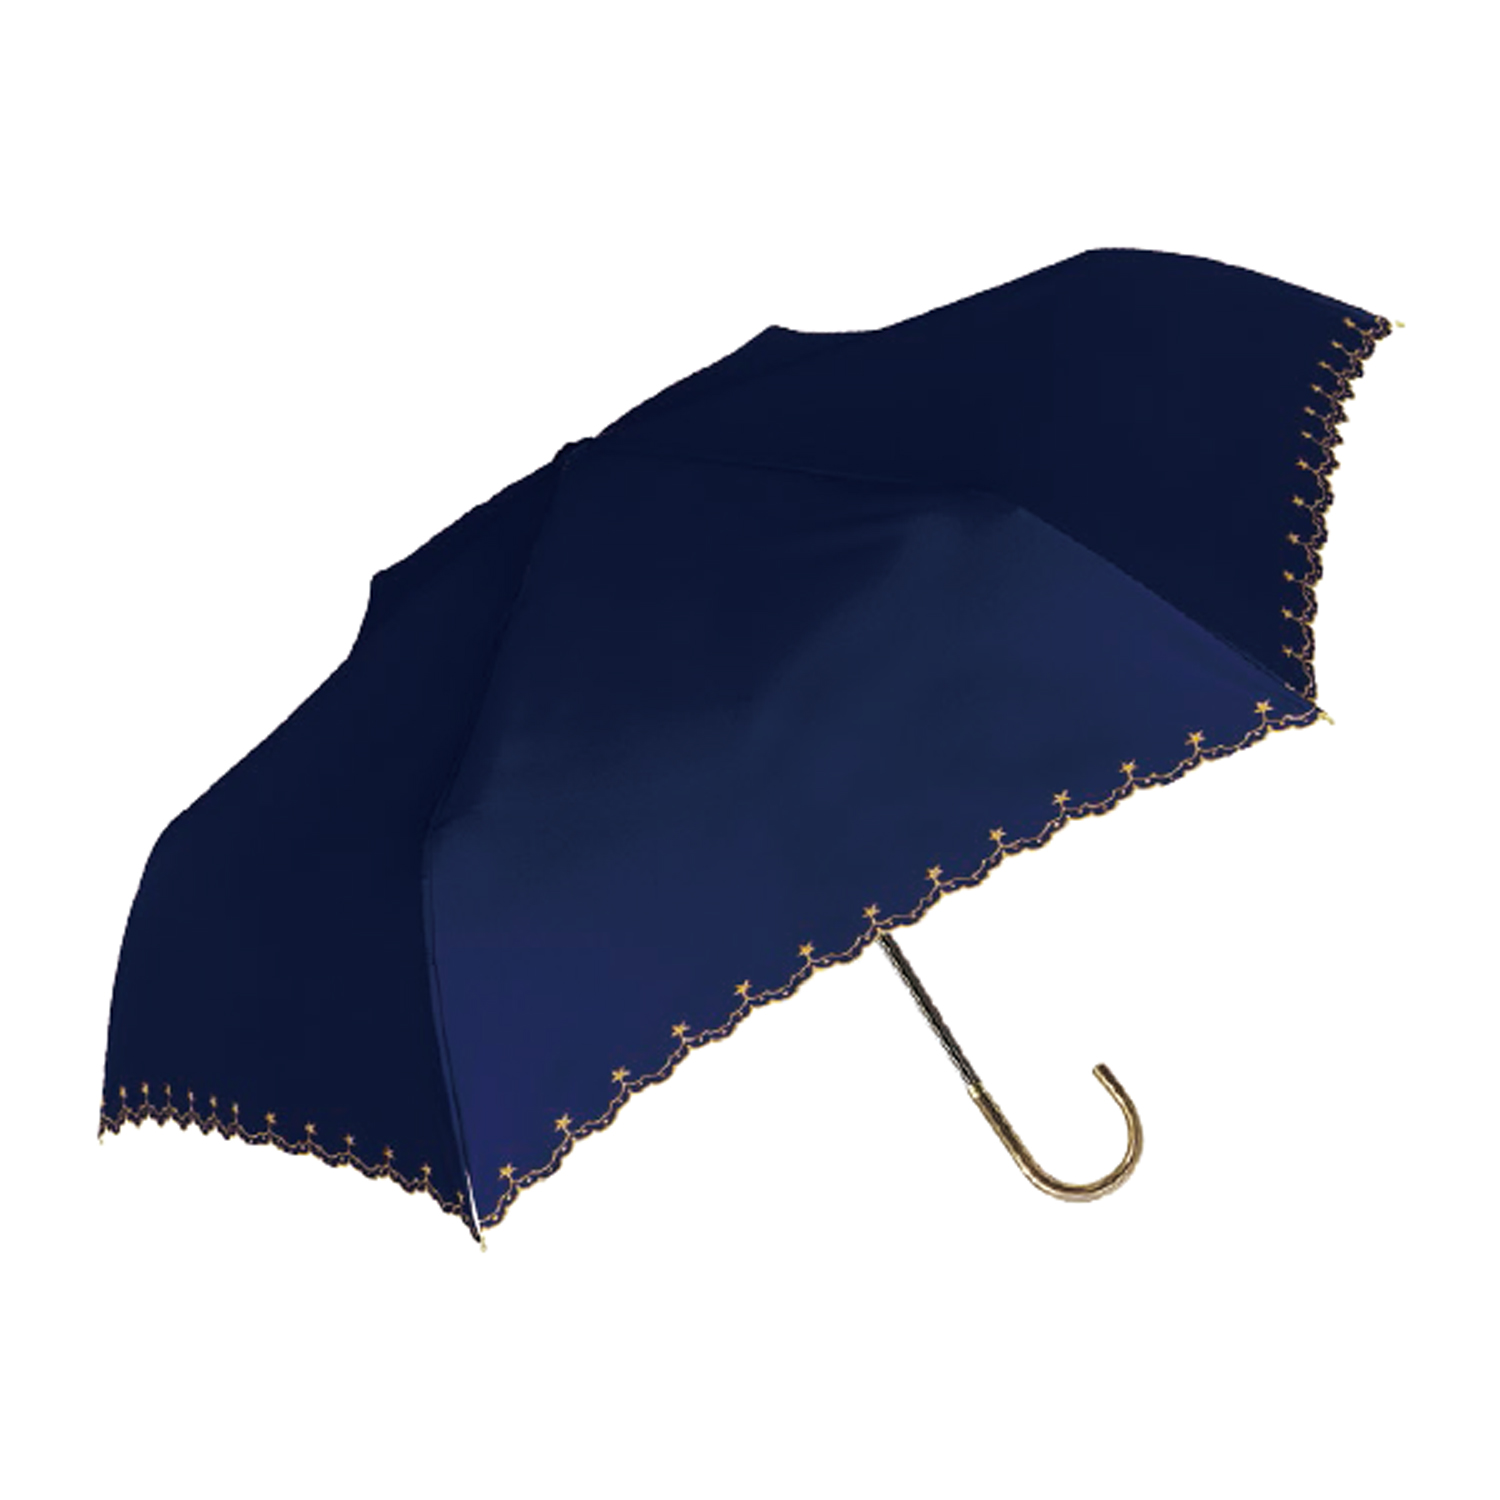 日傘 折りたたみ傘 晴雨兼用 UVカット レディース 星 レース フリル かわいい 耐風 遮光 軽量...